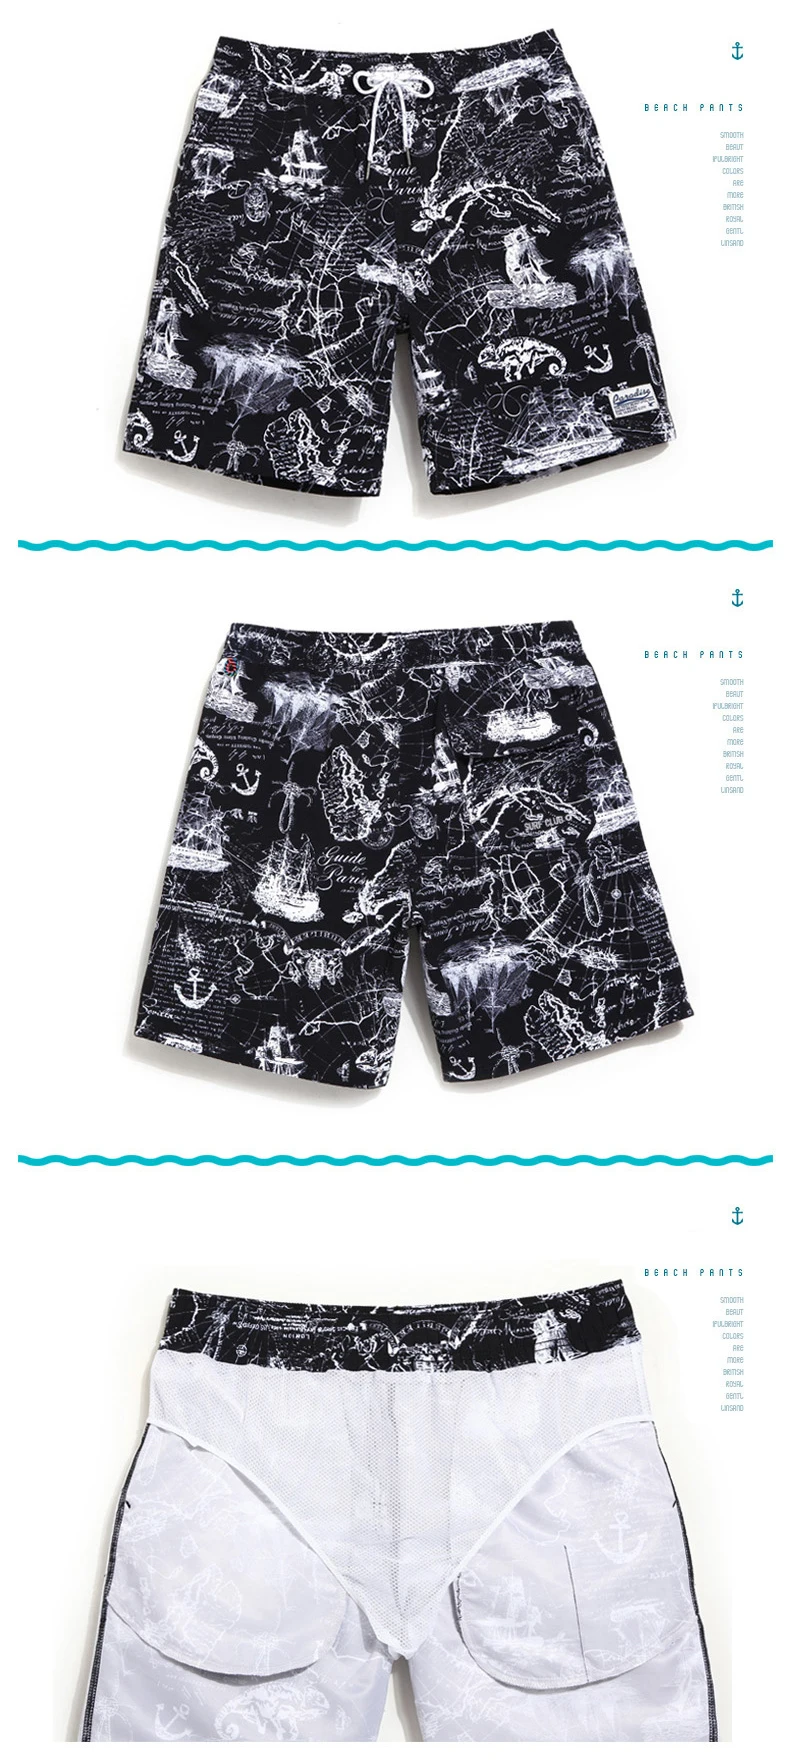 Gailang бренд для мужчин пляжные шорты доска Боксер мужские шорты для купания быстросохнущая модные купальники